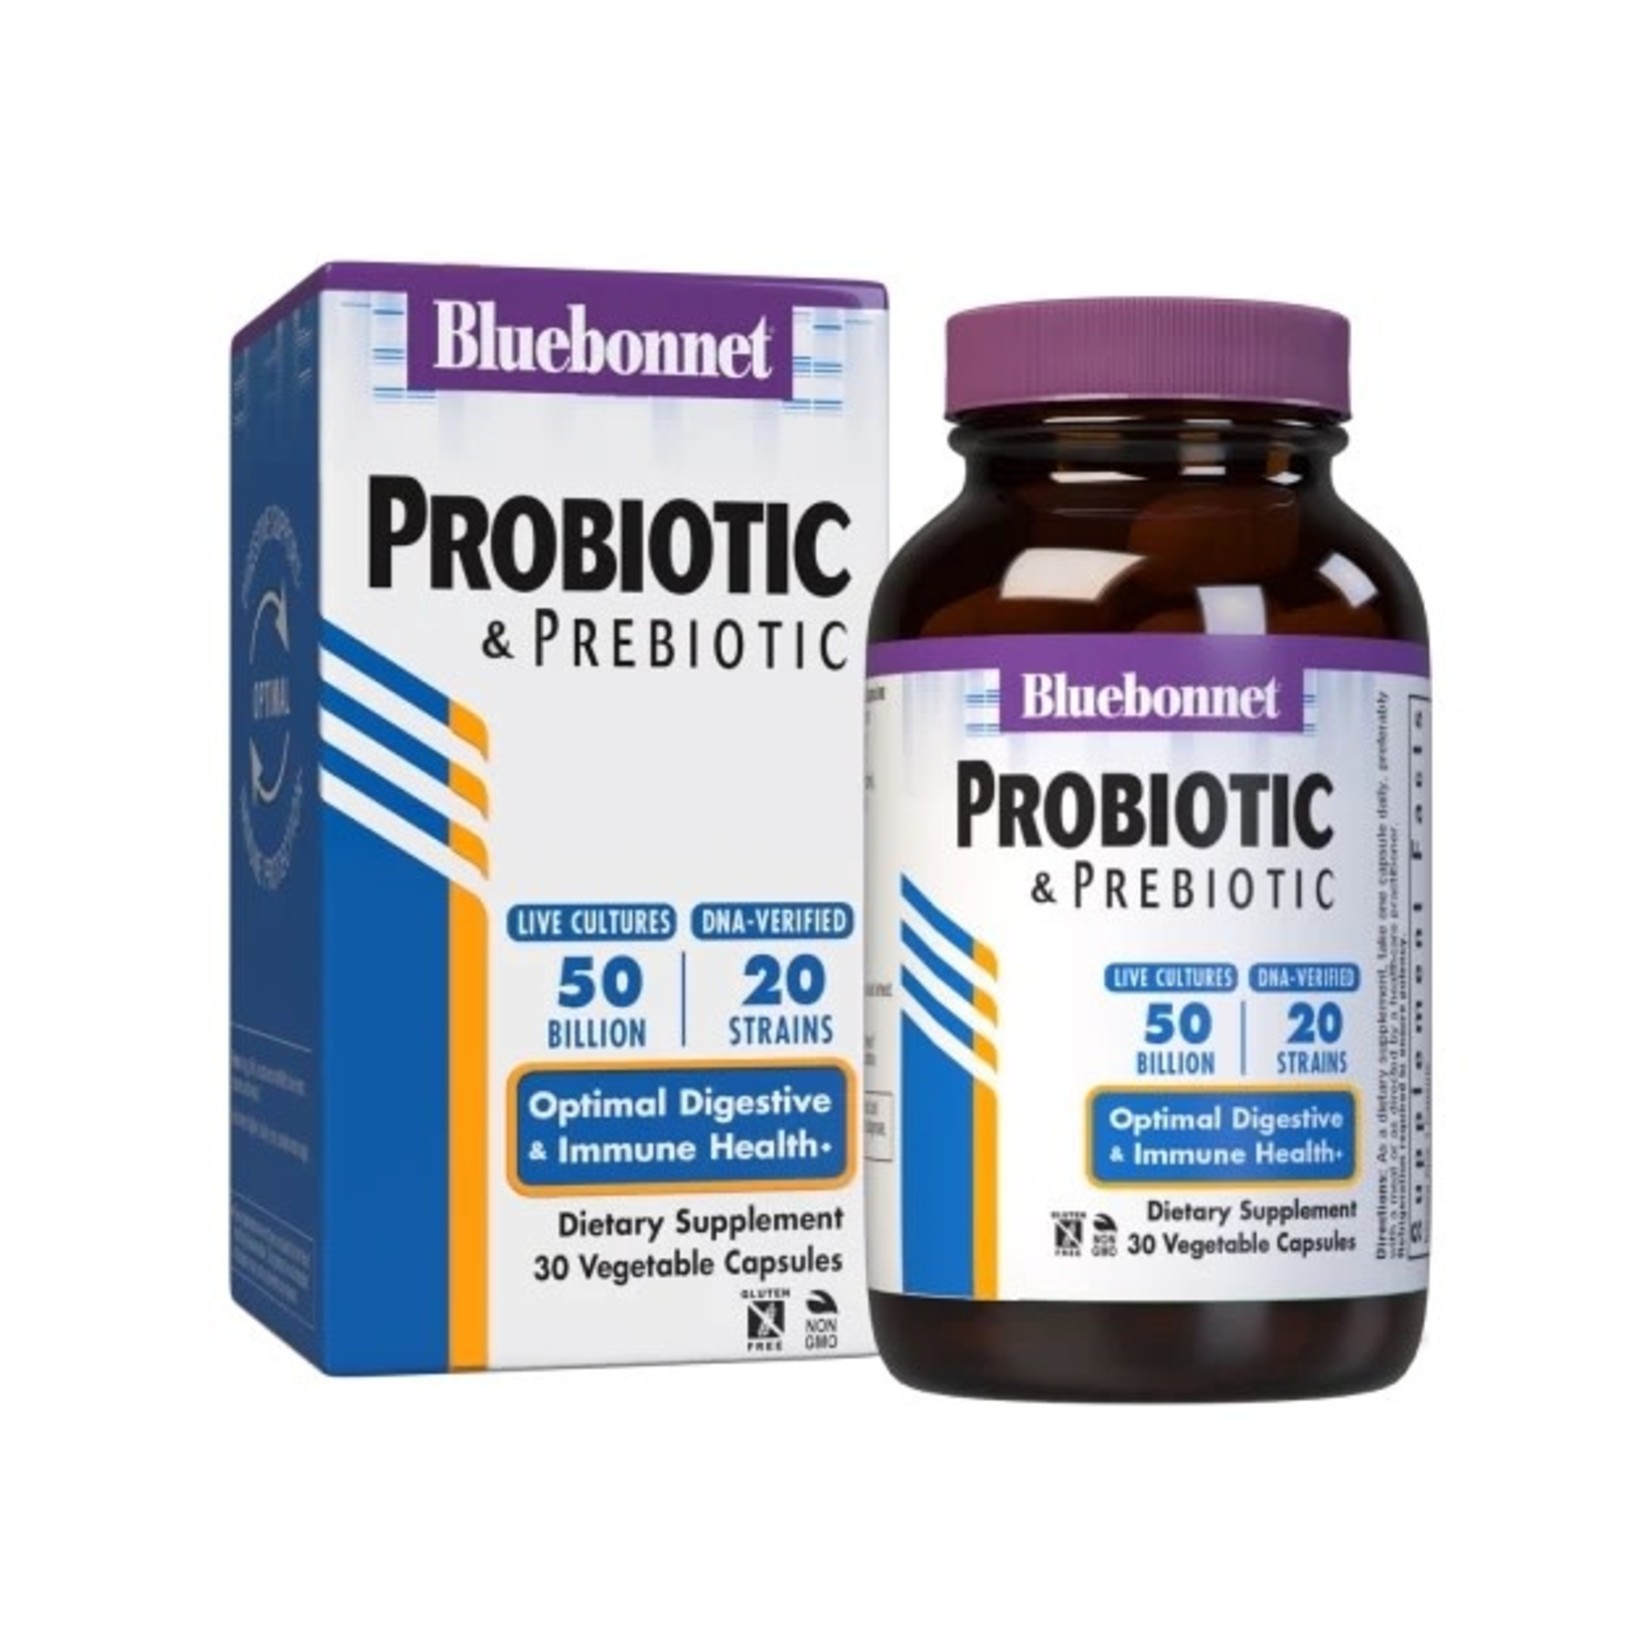 BlueBonnet Bluebonnet 50 Billion Probiotic & Prebiotic 30 Capsules